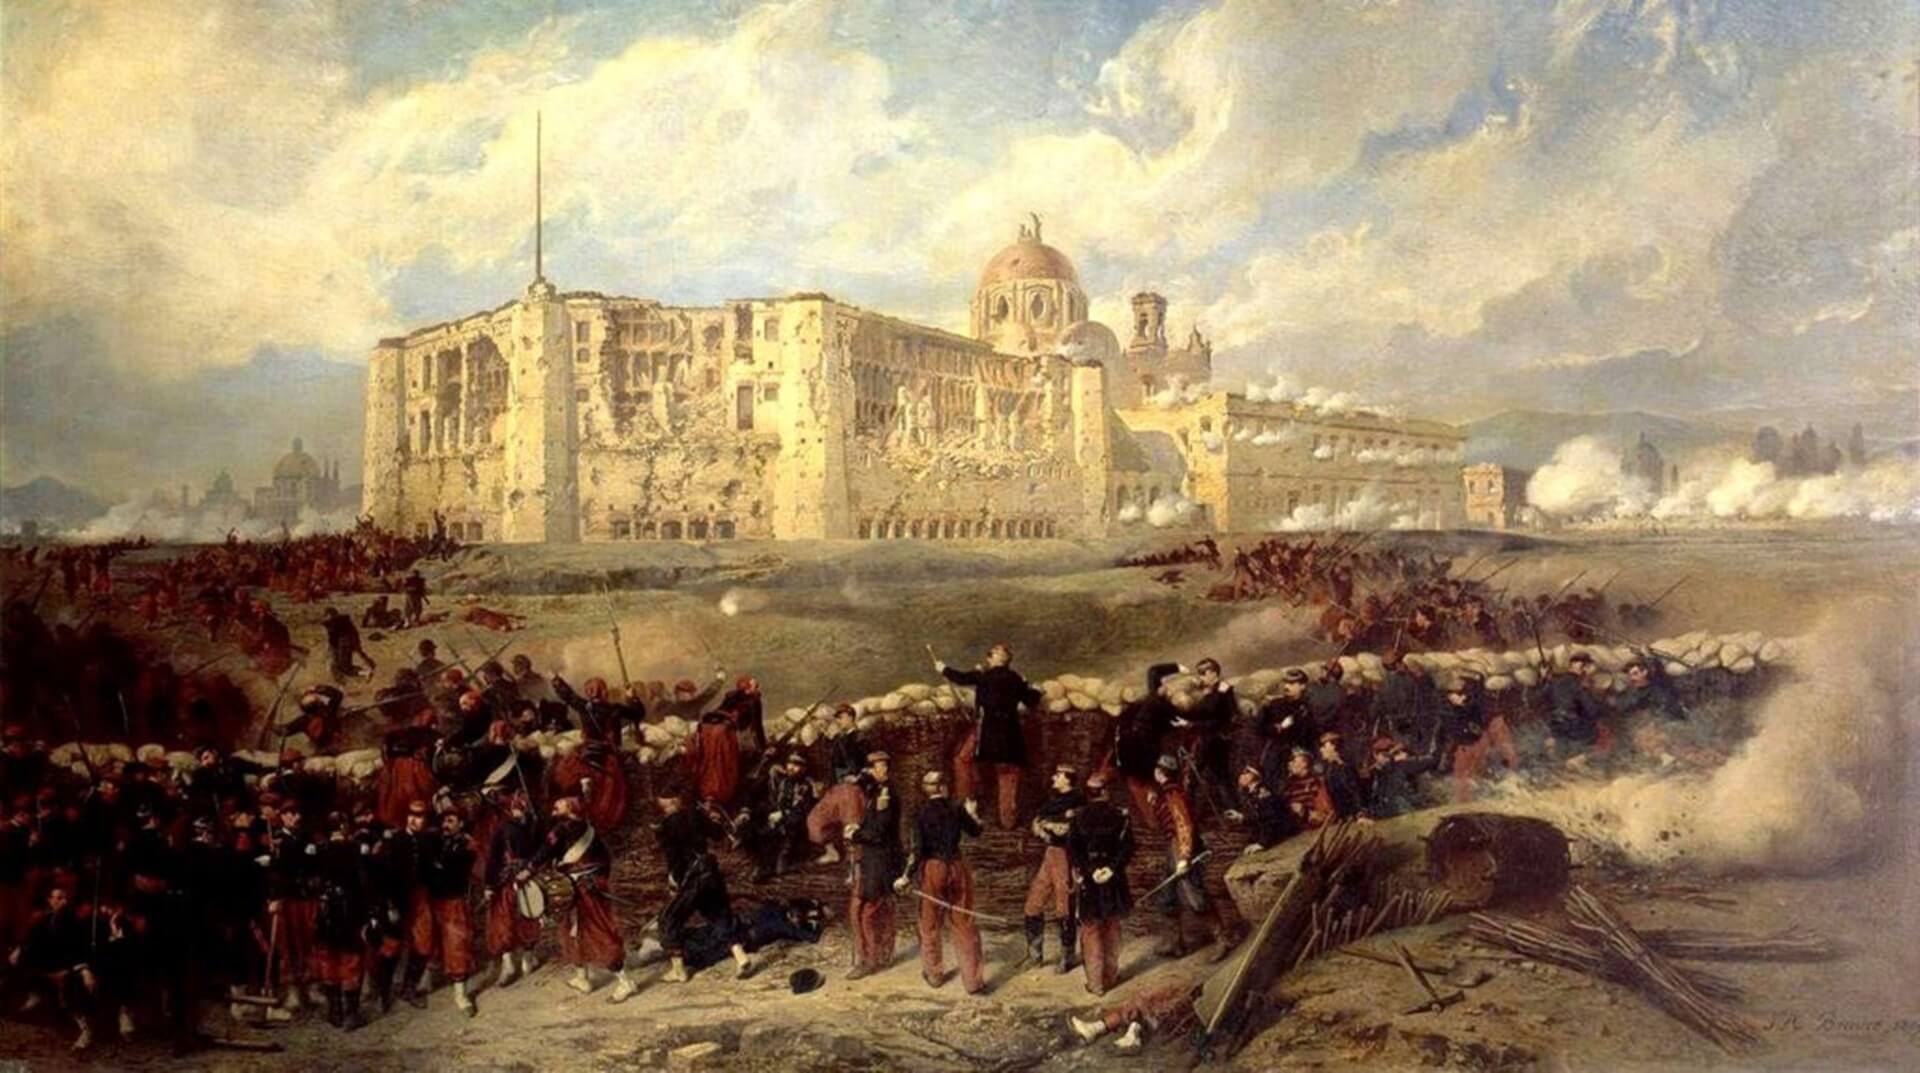 La intervención francesa en México y el Segundo Imperio de Maximiliano I (1862-1867)